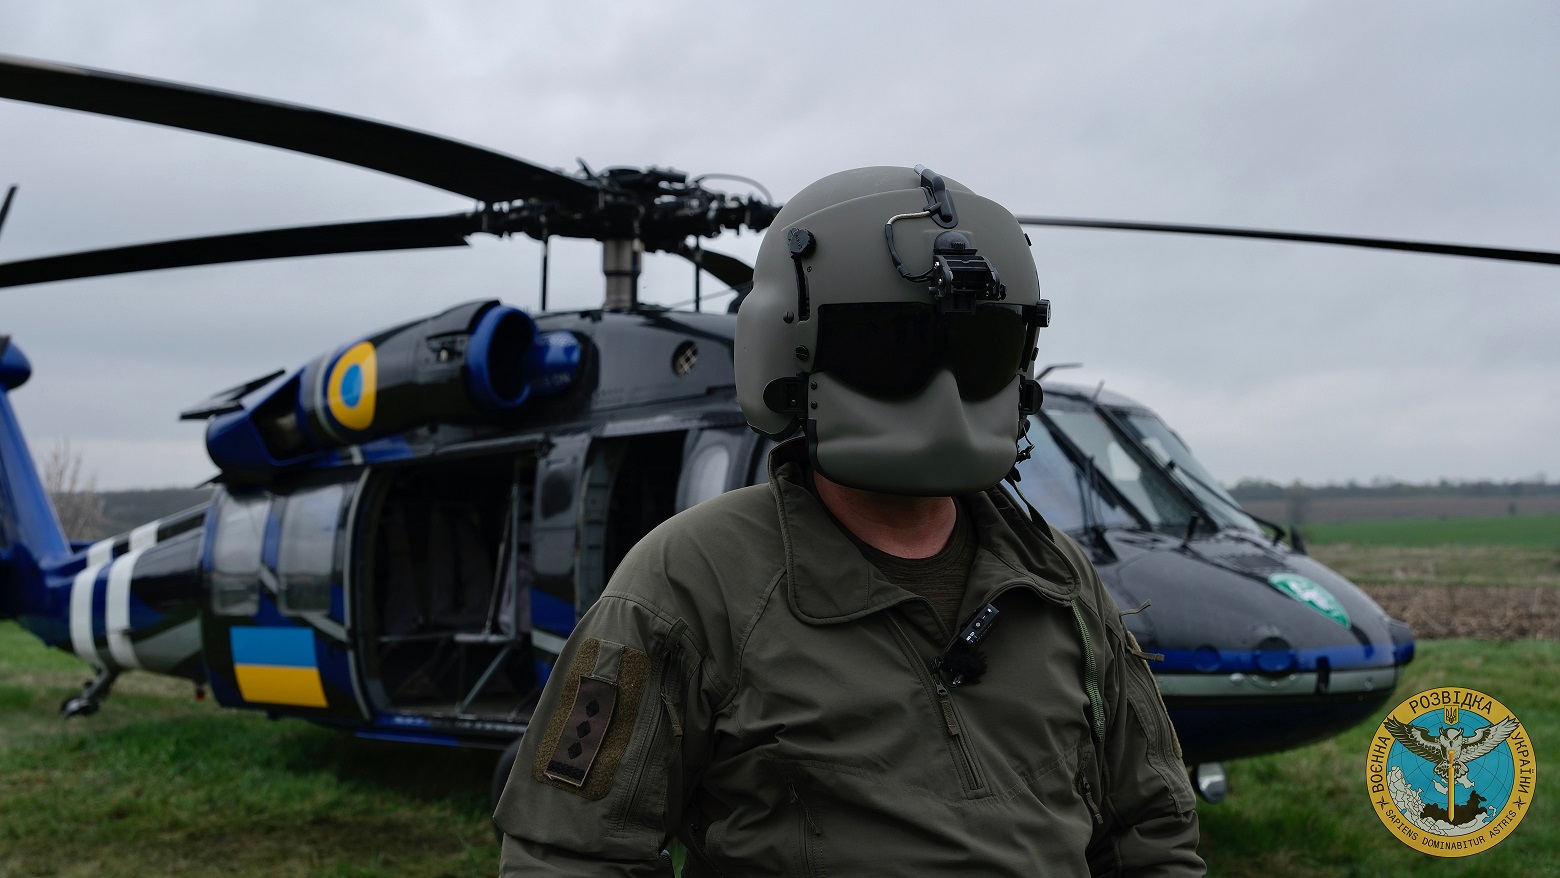 Бійці Головного управління розвідки опанували та використовують в бойових діях легендарний американський вертоліт Black Hawk - «Чорний яструб».